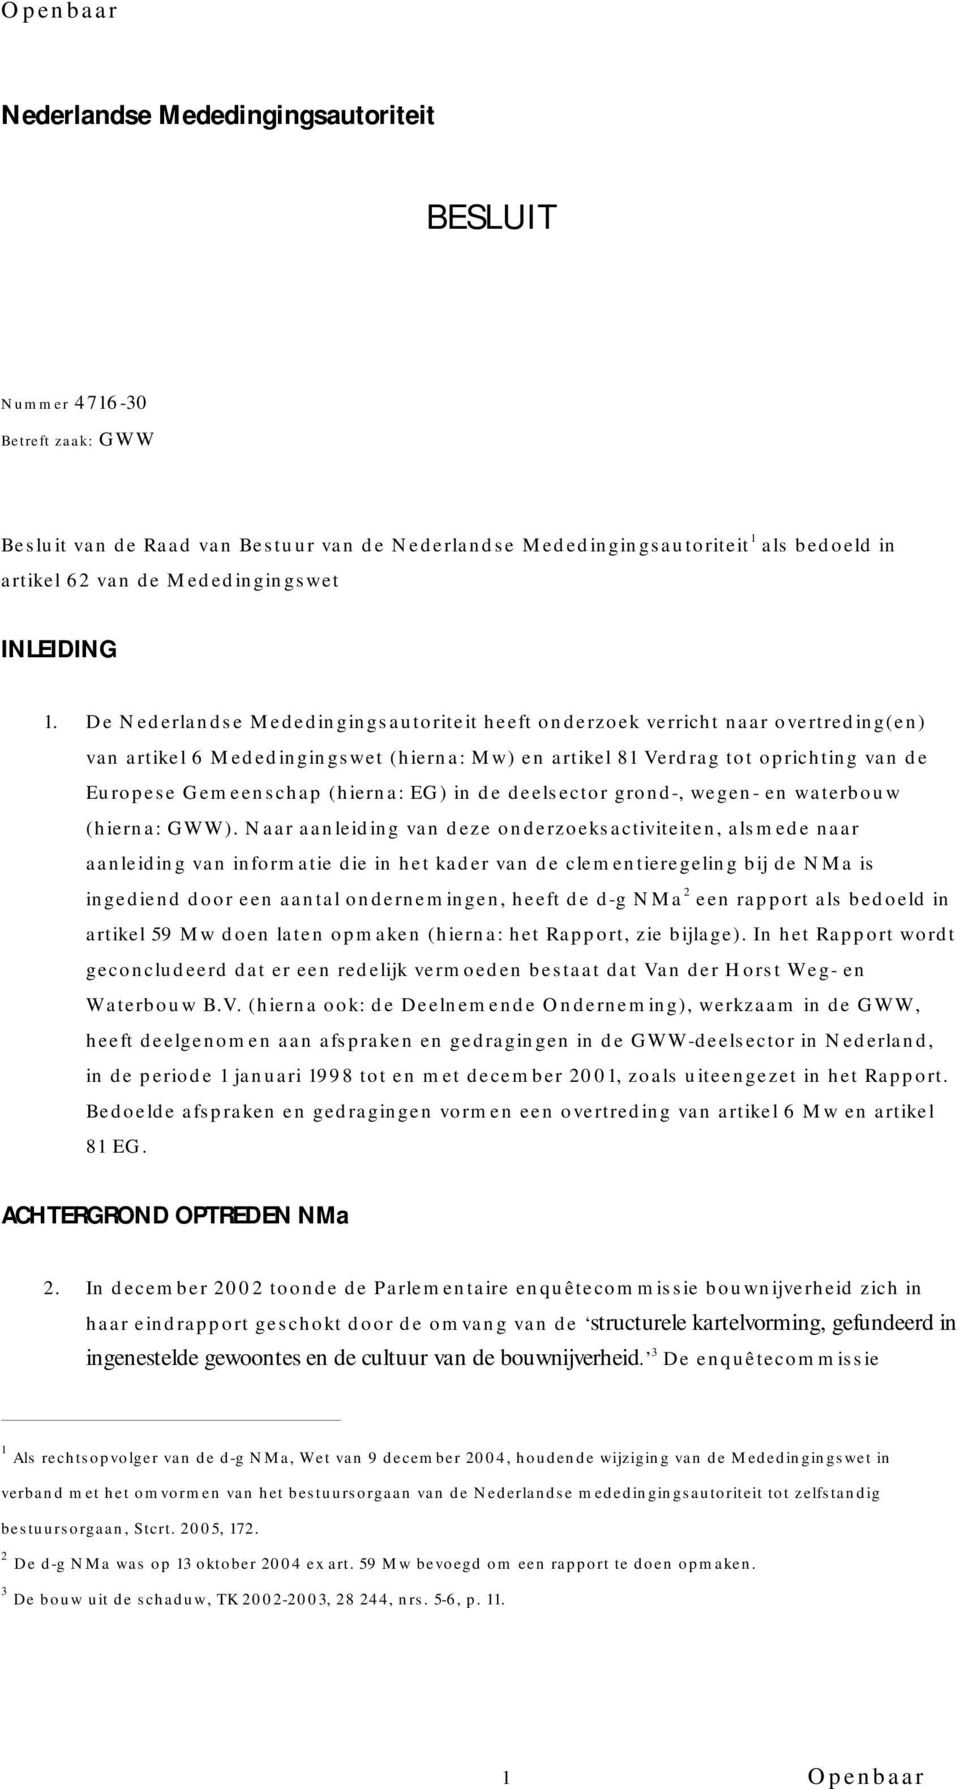 De Nederlandse Mededingingsautoriteit heeft onderzoek verricht naar overtreding(en) van artikel 6 Mededingingswet (hierna: Mw) en artikel 81 Verdrag tot oprichting van de Europese Gemeenschap